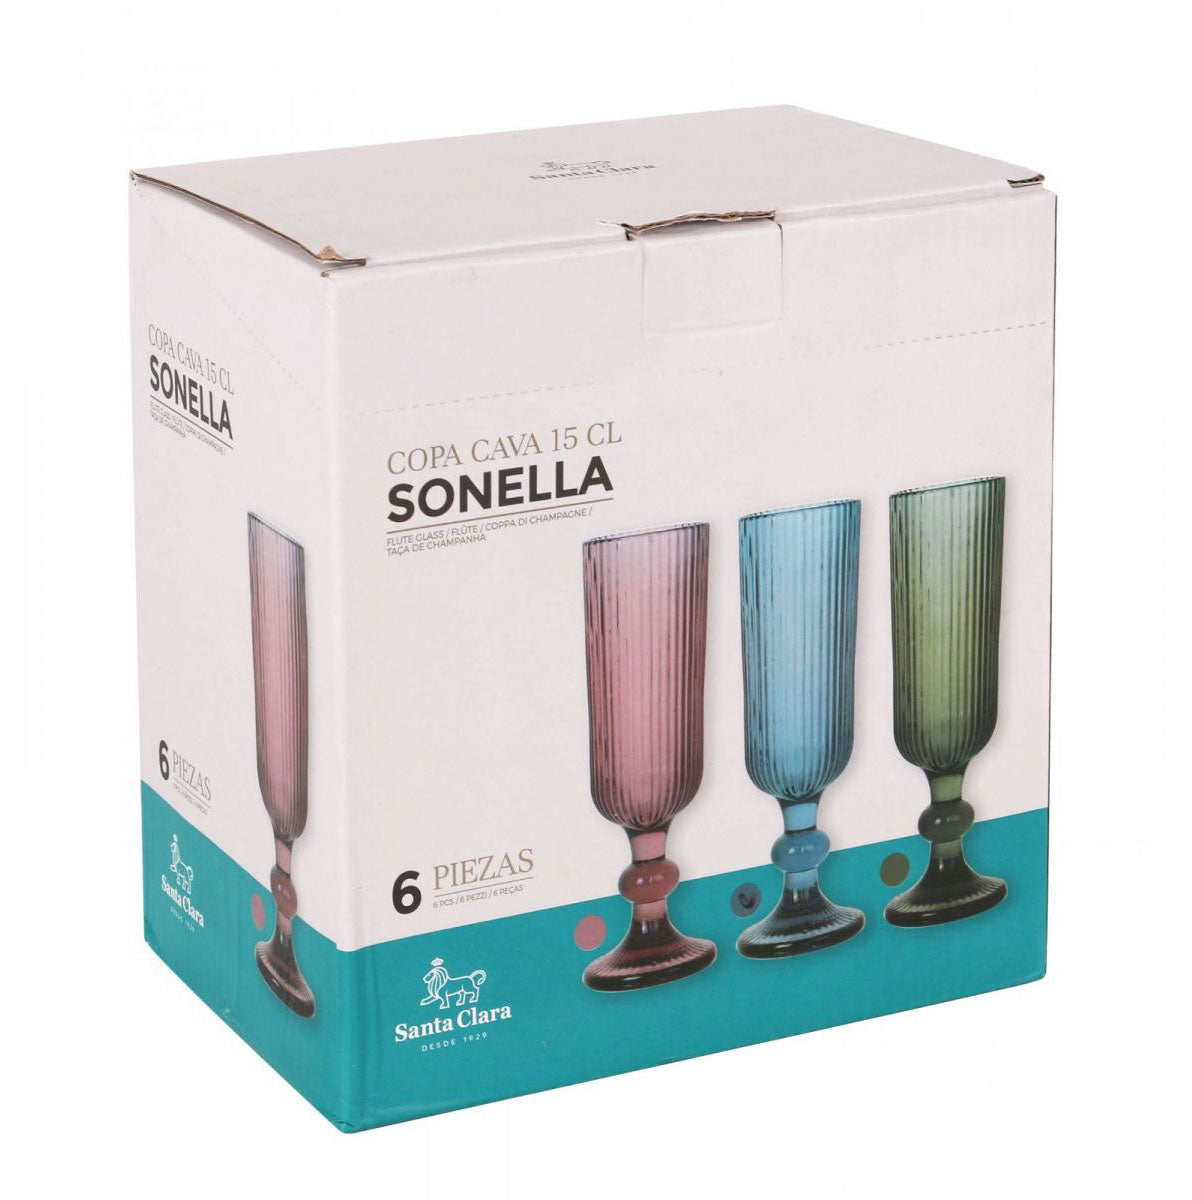 Sonella Blue Champagne flutes 150ml